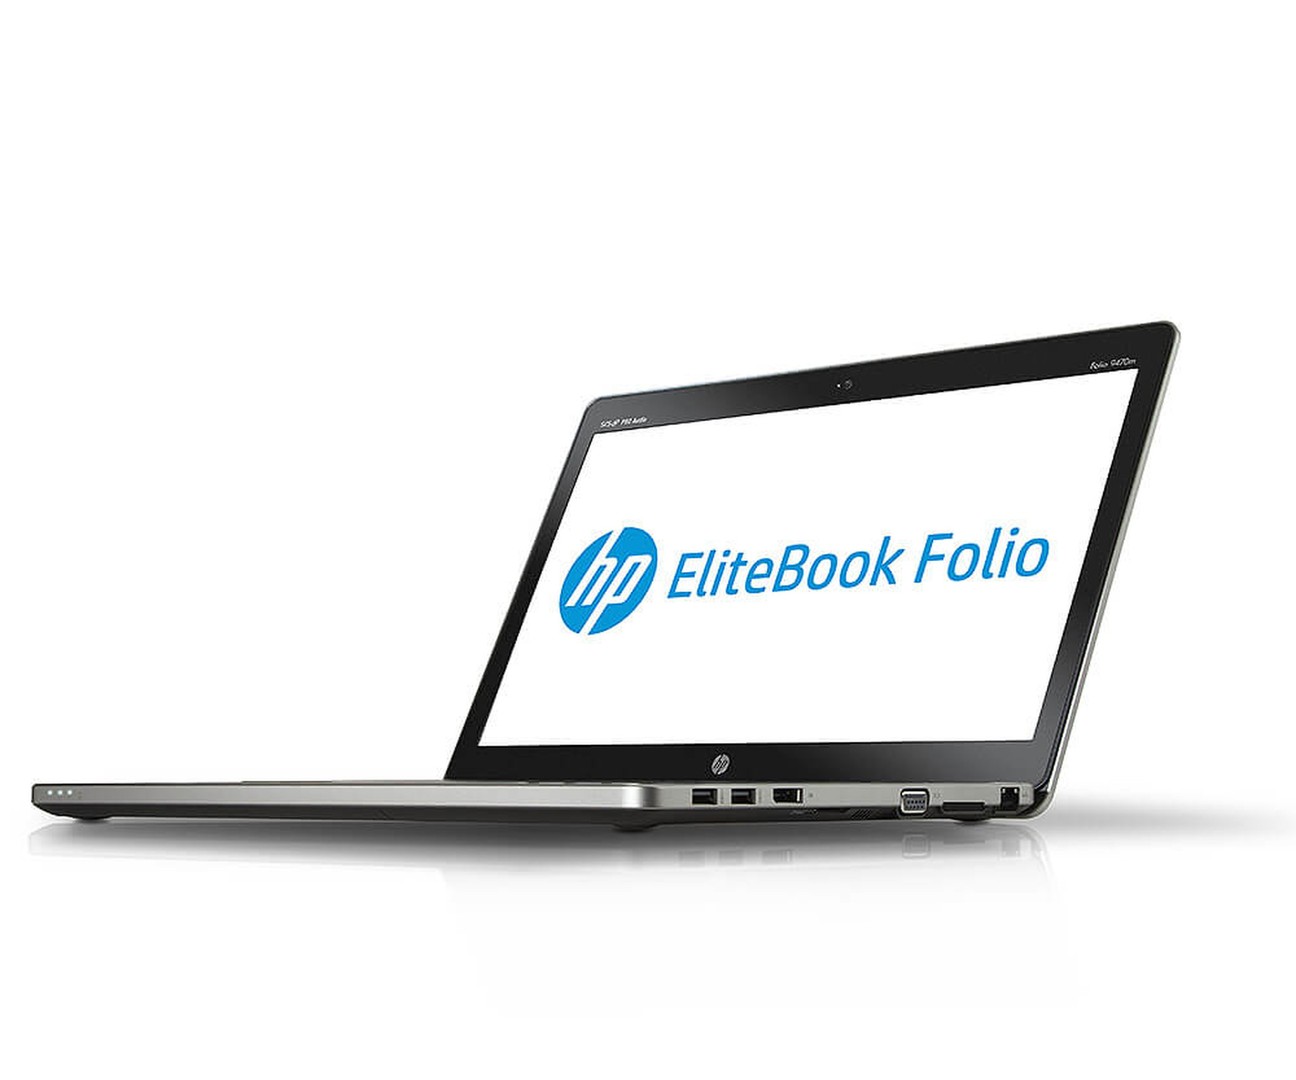 Laptop HP Folio Core i5 de 4ta gen / 8gbram / 320gbdisco / Camara